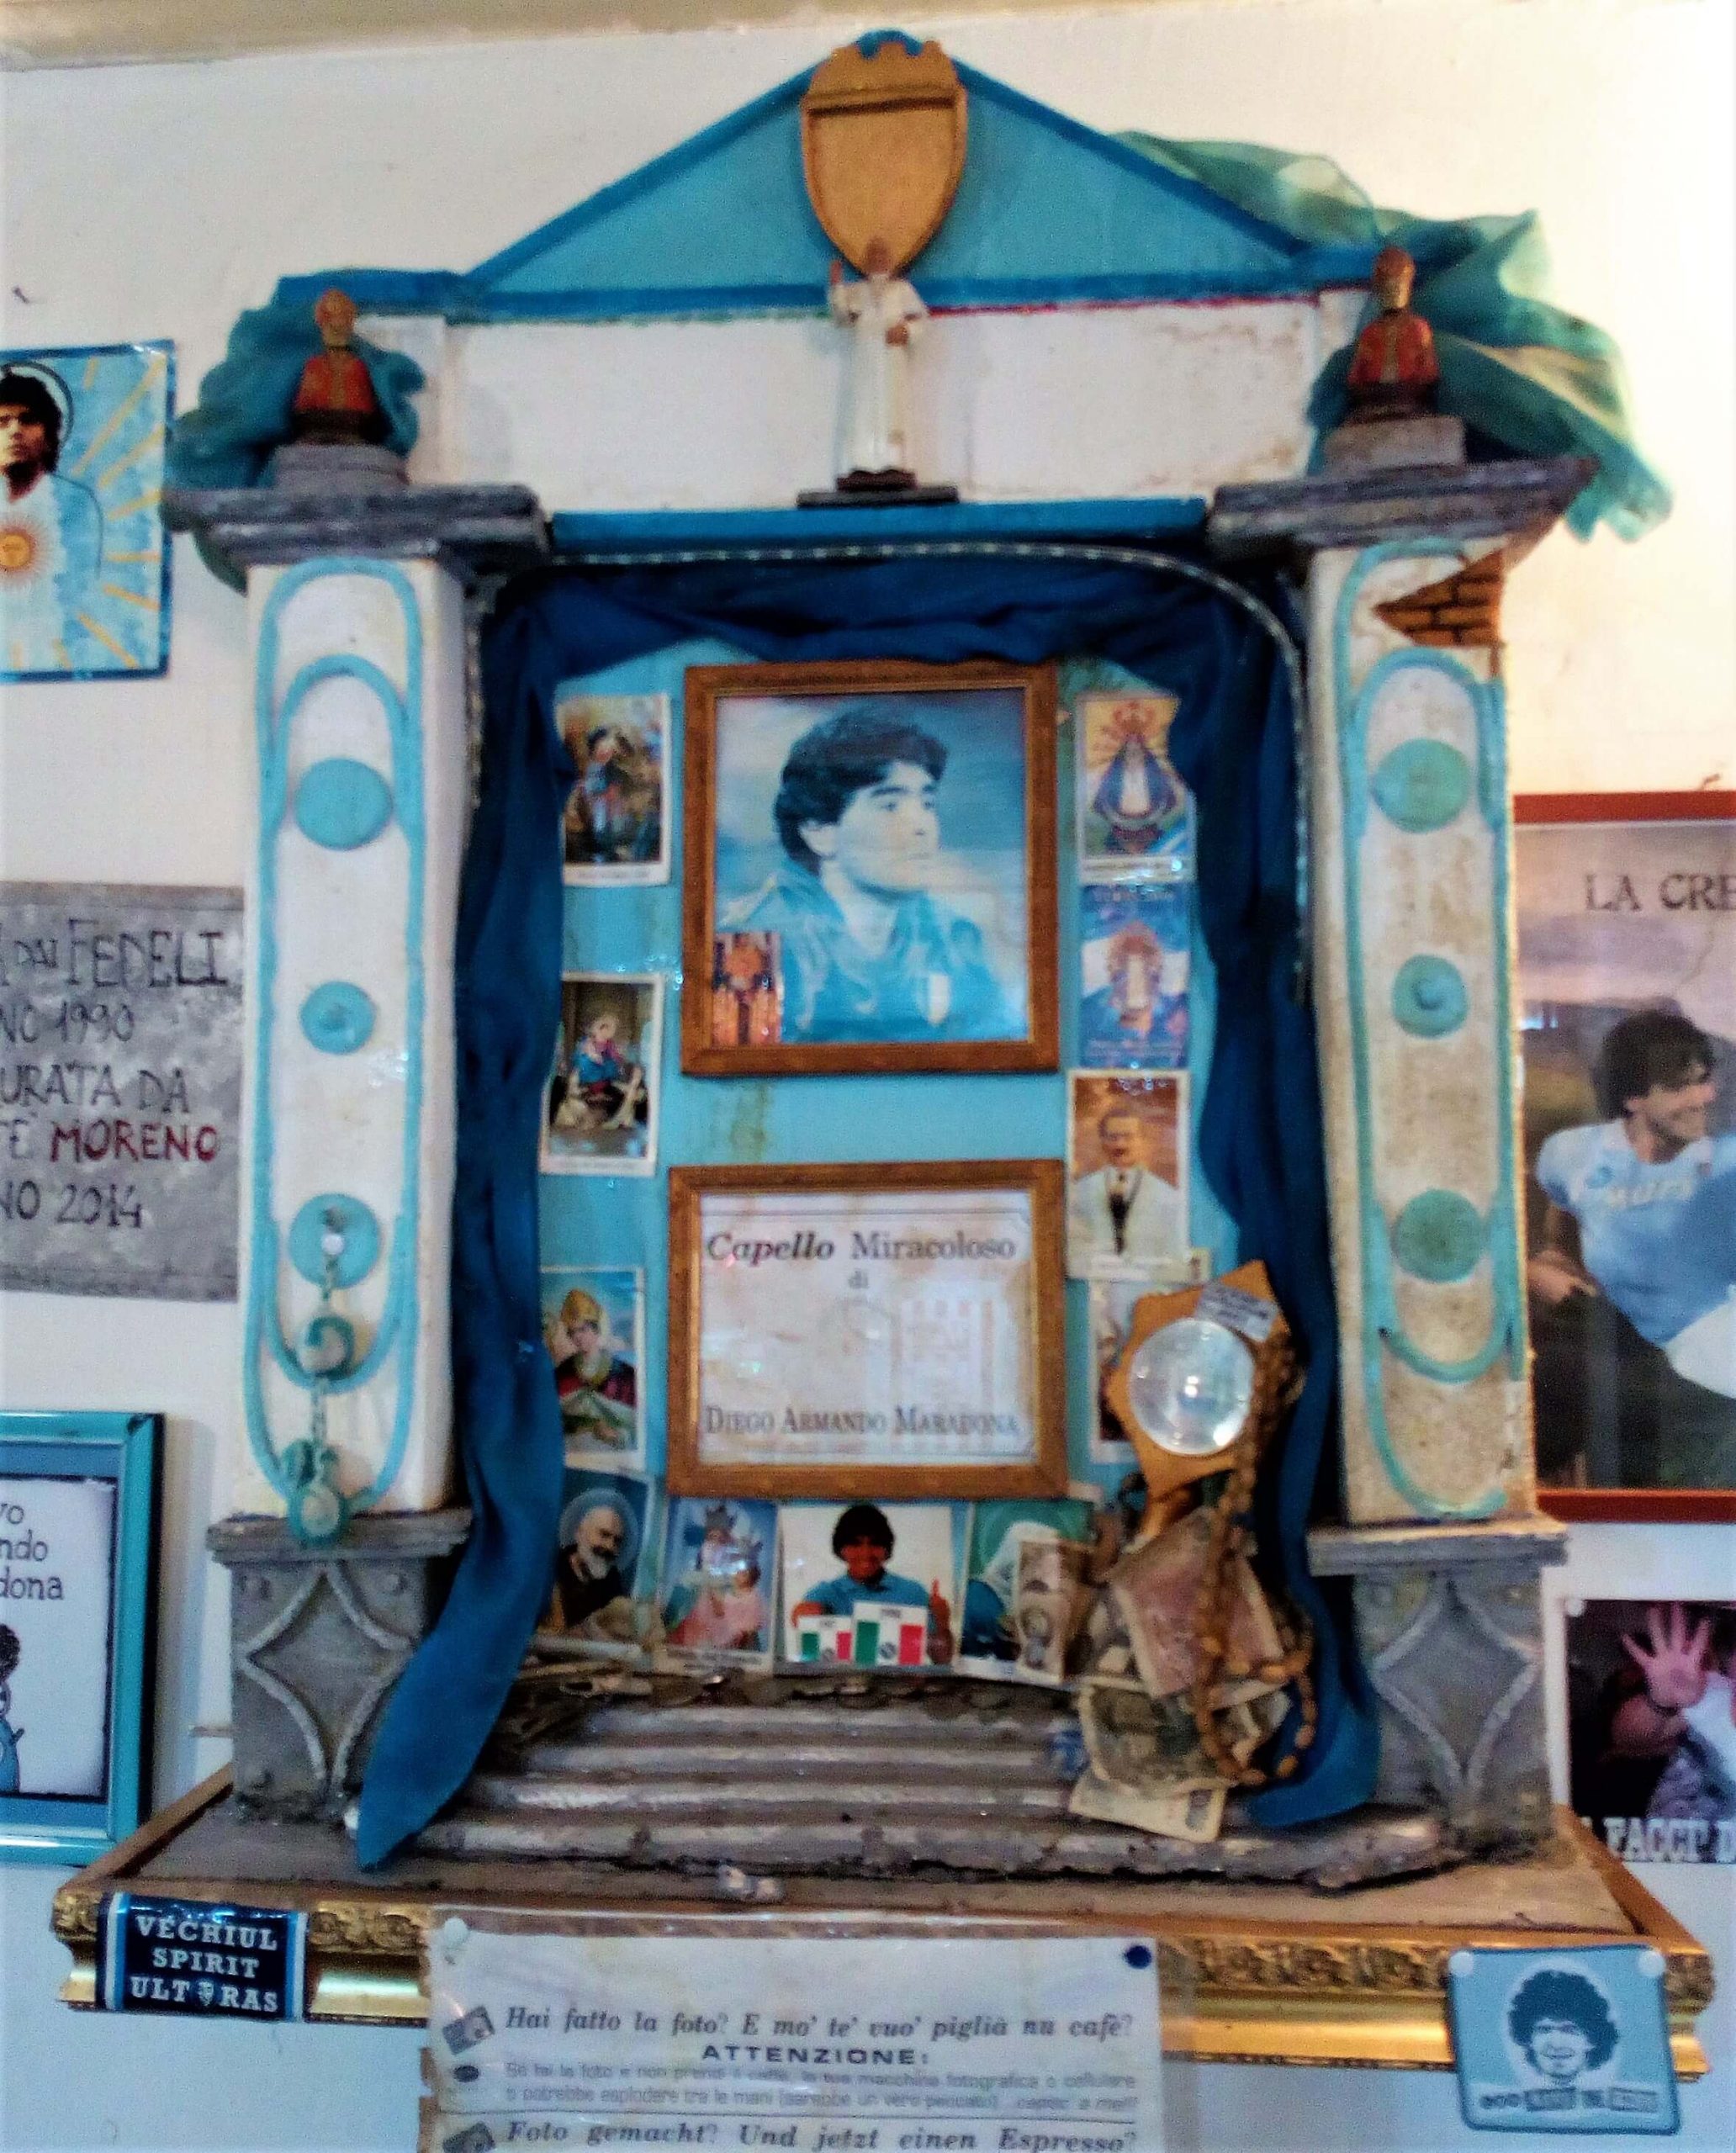 L’altarino del Capello miracoloso di Maradona esposto in un bar nel centro storico di Napoli